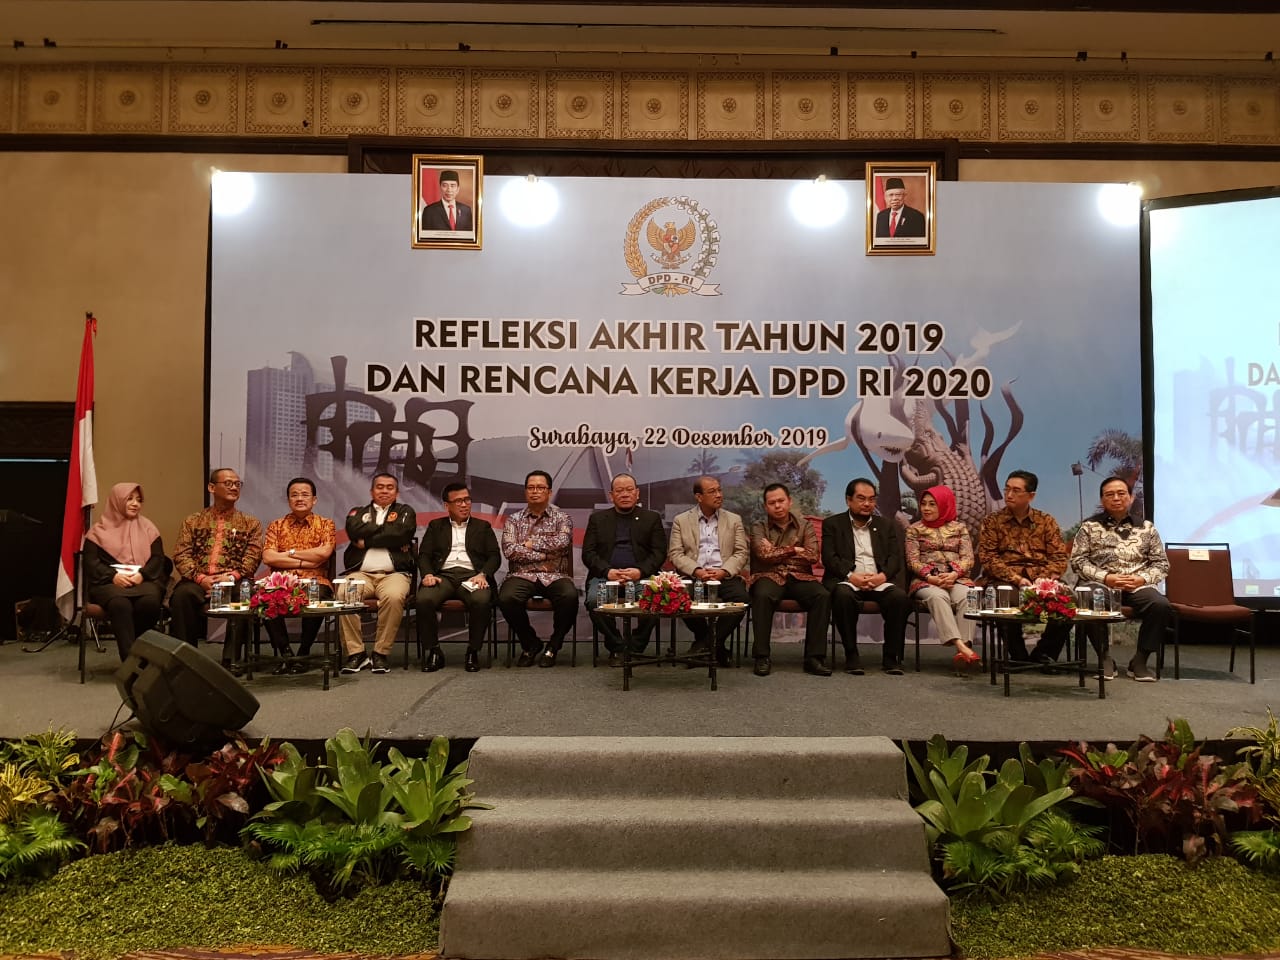 Ketua DPD RI La Nyalla Mattalitti didamping para wakil ketua dan para pimpinan Alat Kelengkapan DPD RI dalam acara refleksi Akhir Tahun 2019 di Hotel Shangri-La, Surabaya, Minggu 22 Desember 2019 malam. 